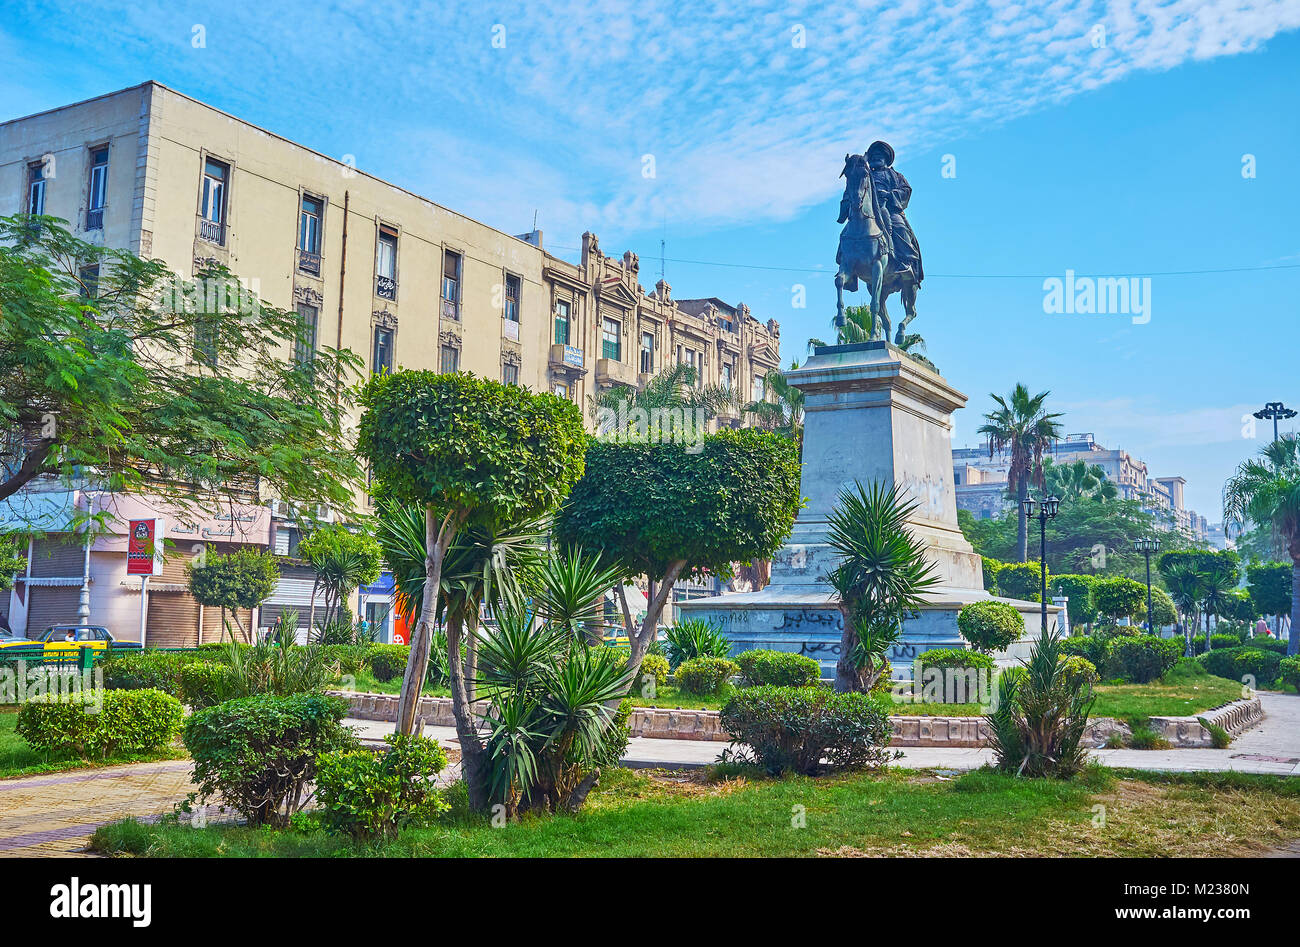 Alessandria, Egitto - 17 dicembre 2017: la statua equestre di Muhammad Ali Pasha tra i cespugli tagliati nel giardino di piazza El-Tahrir, nel mese di dicembre Foto Stock